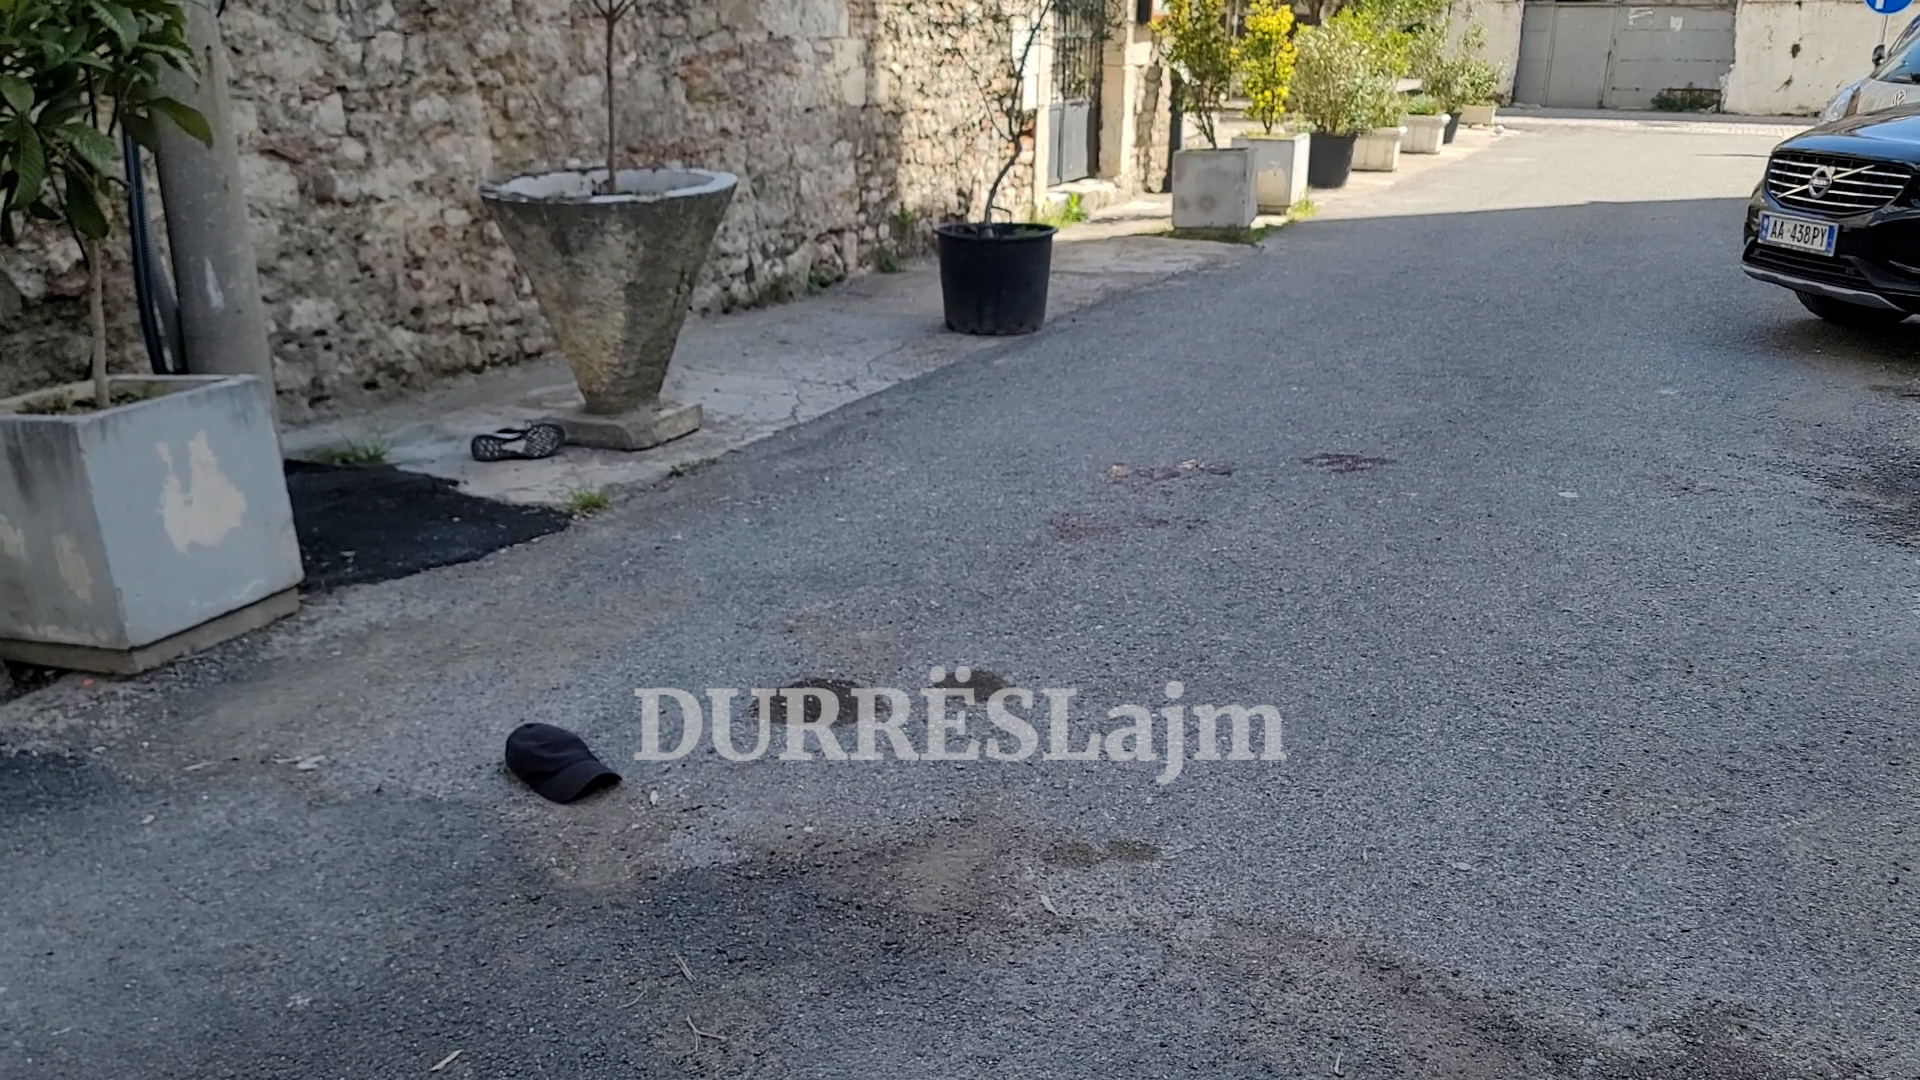 Plagosja e dyfishtë në qendër të Durrësit, policia del me njoftim zyrtar (VIDEO)